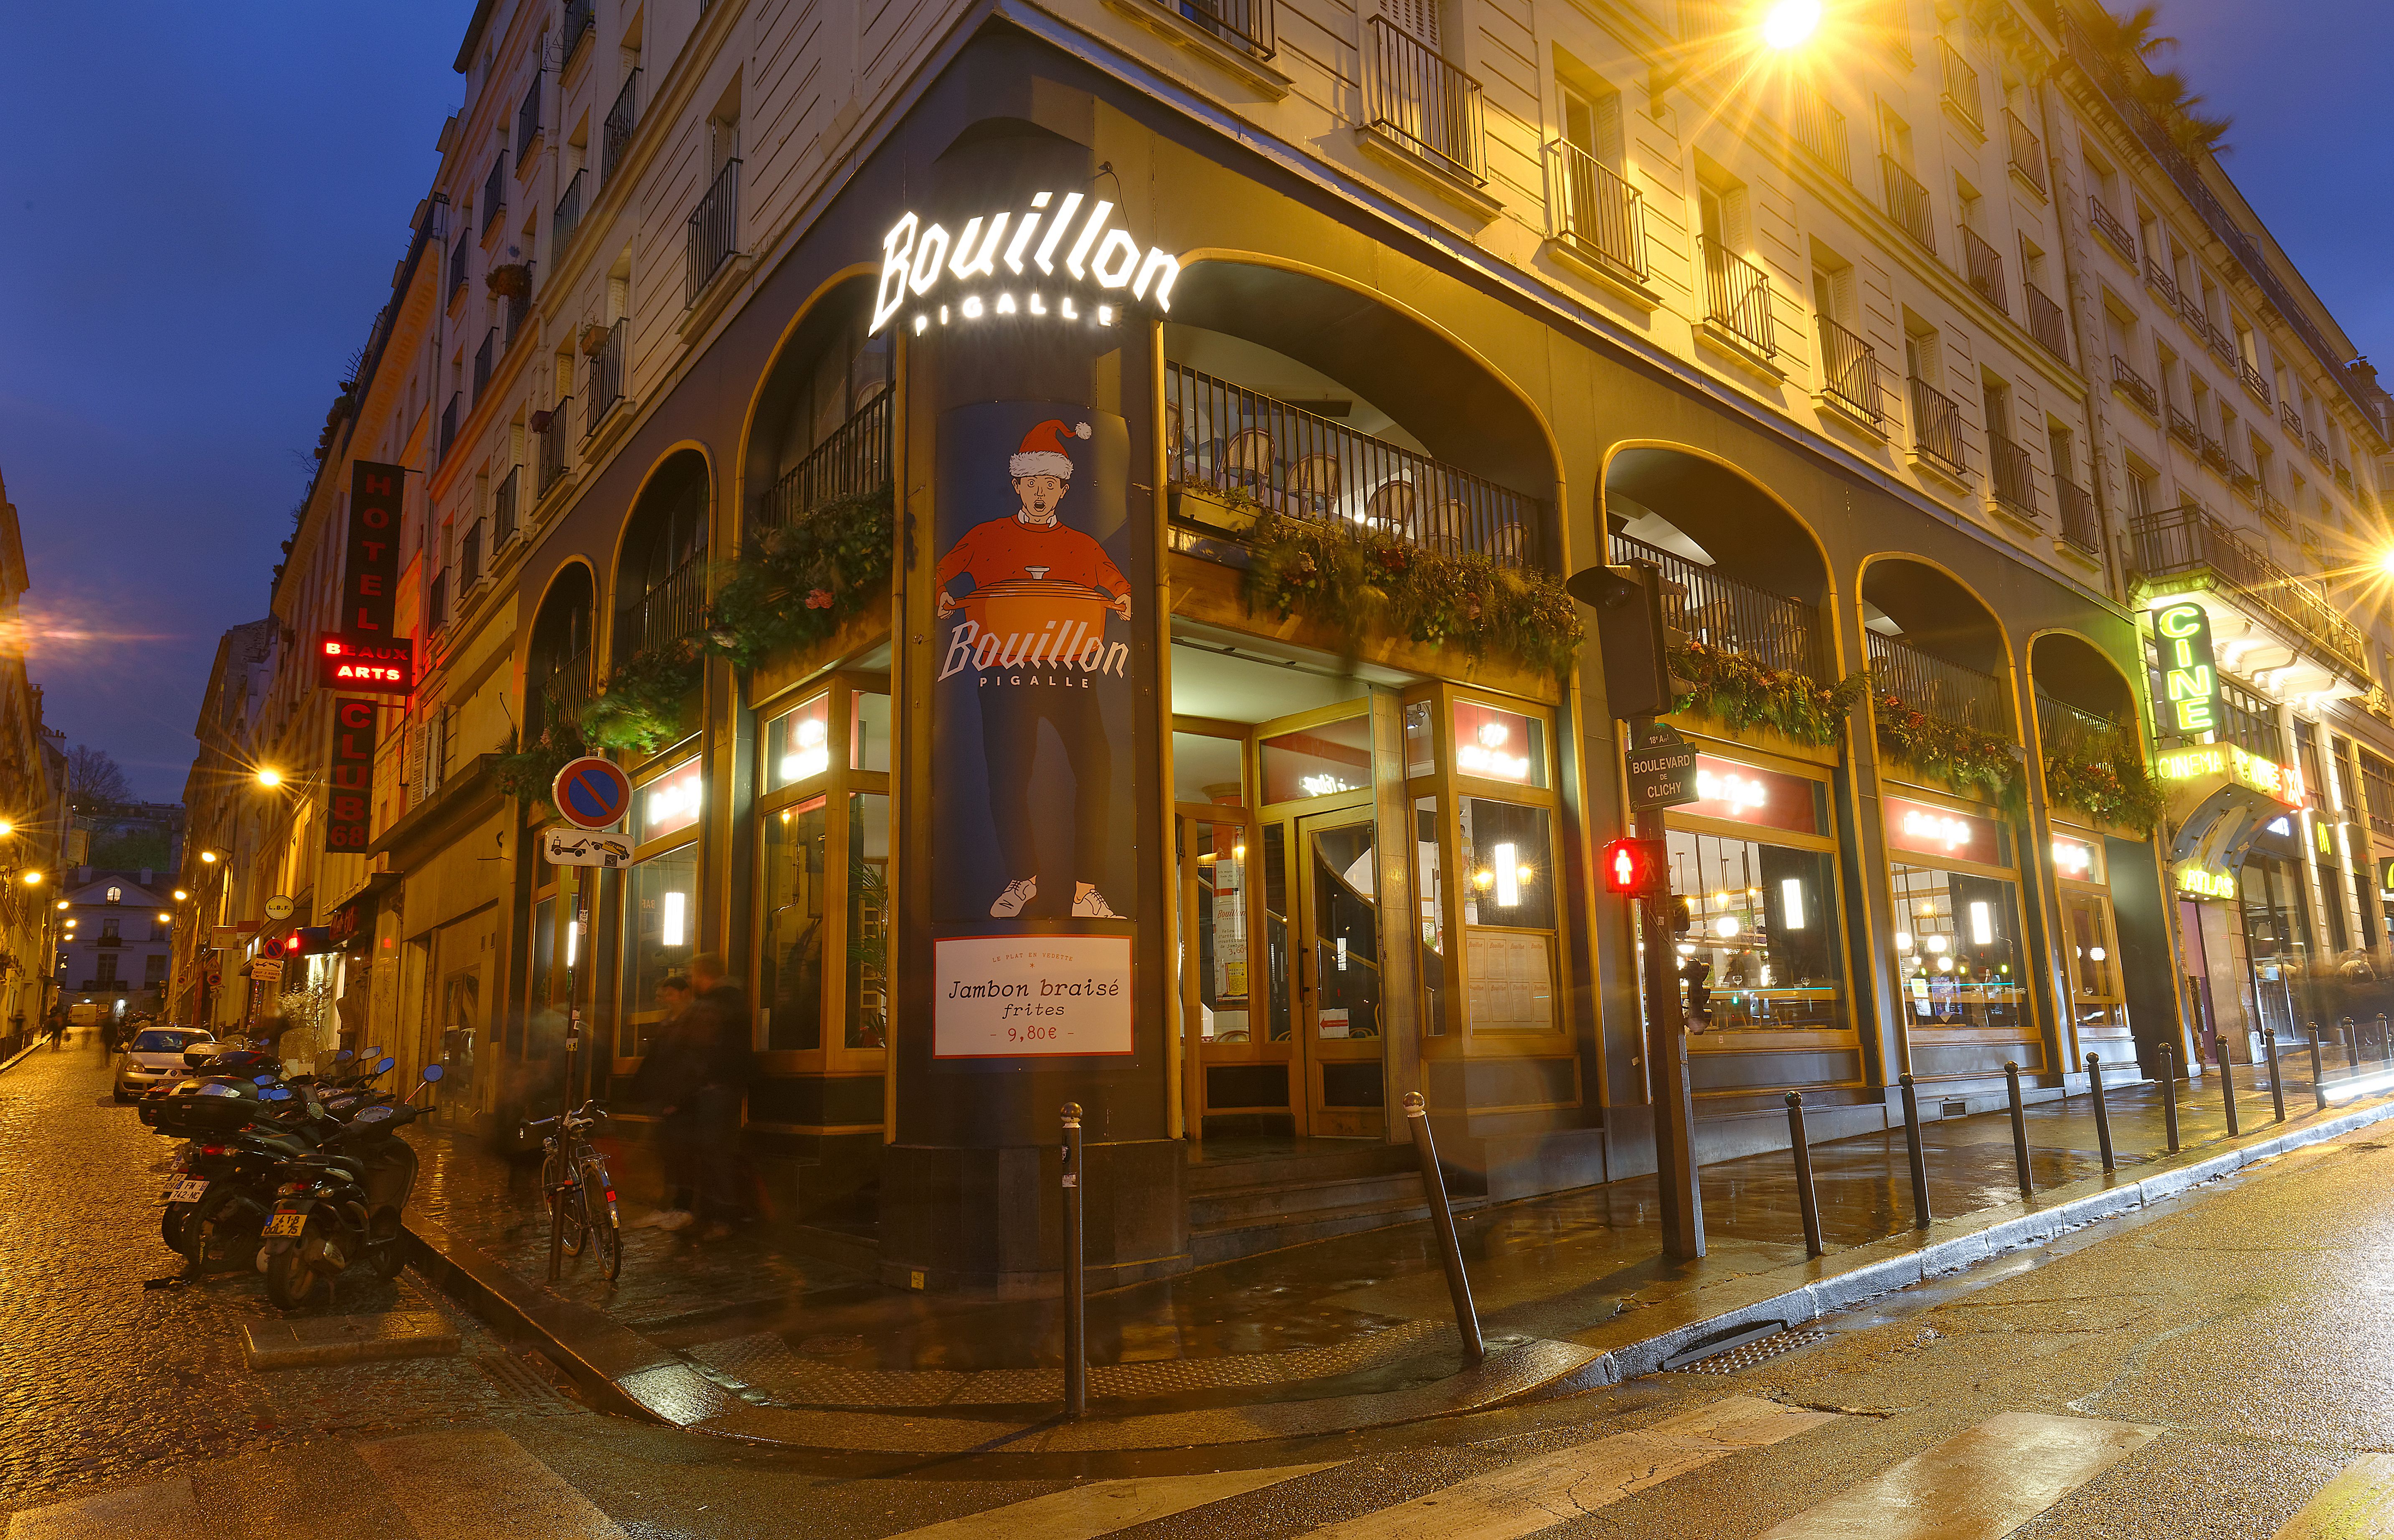 Bouillon Pigalle - best Bouillon restaurants in Paris - ratepunk